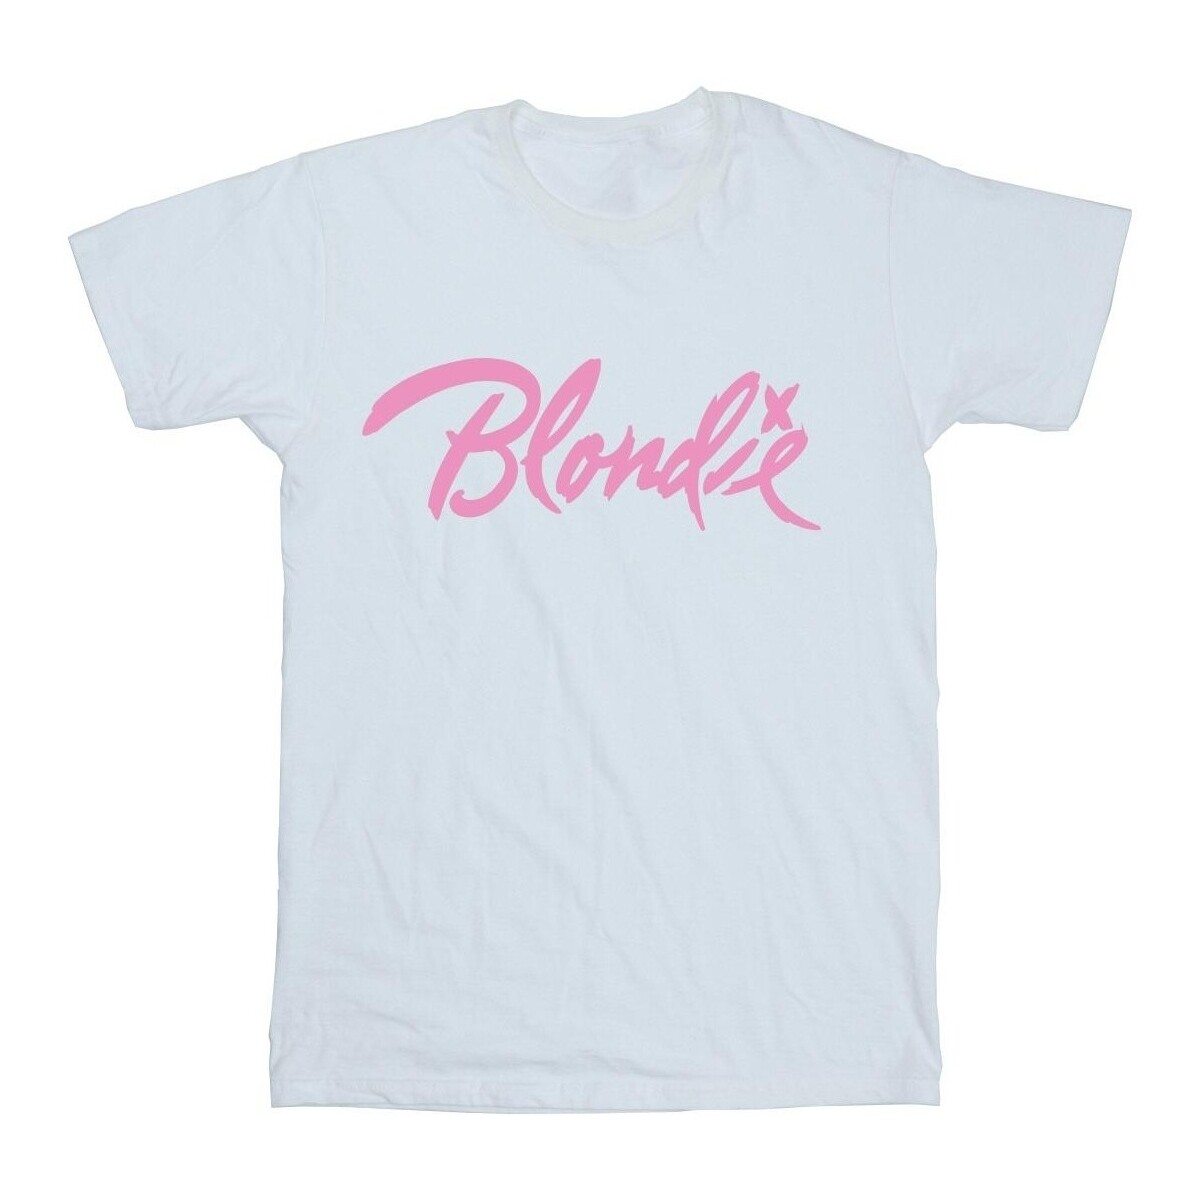 textil Mujer Camisetas manga larga Blondie Classic Logo Blanco